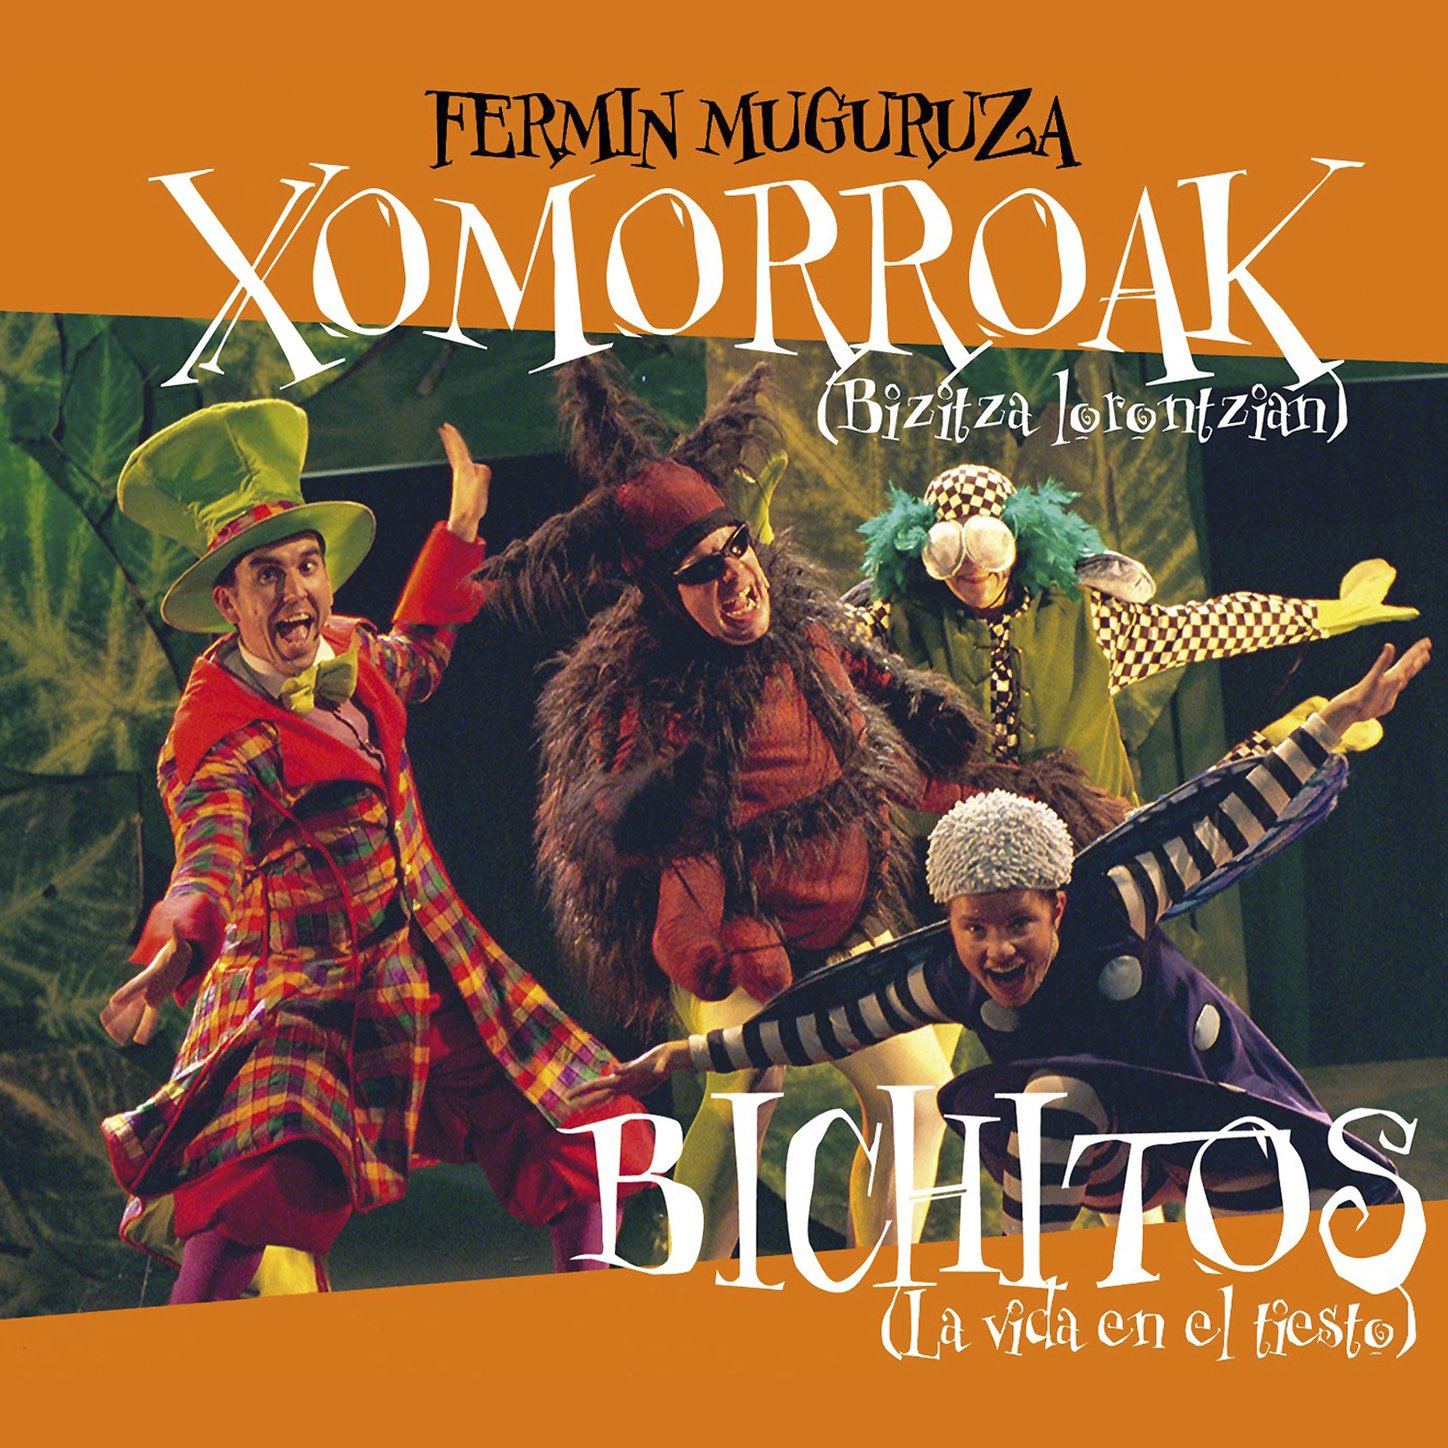 Fermin Muguruza - Xomorroak Bichitos (2005) [FLAC] Download